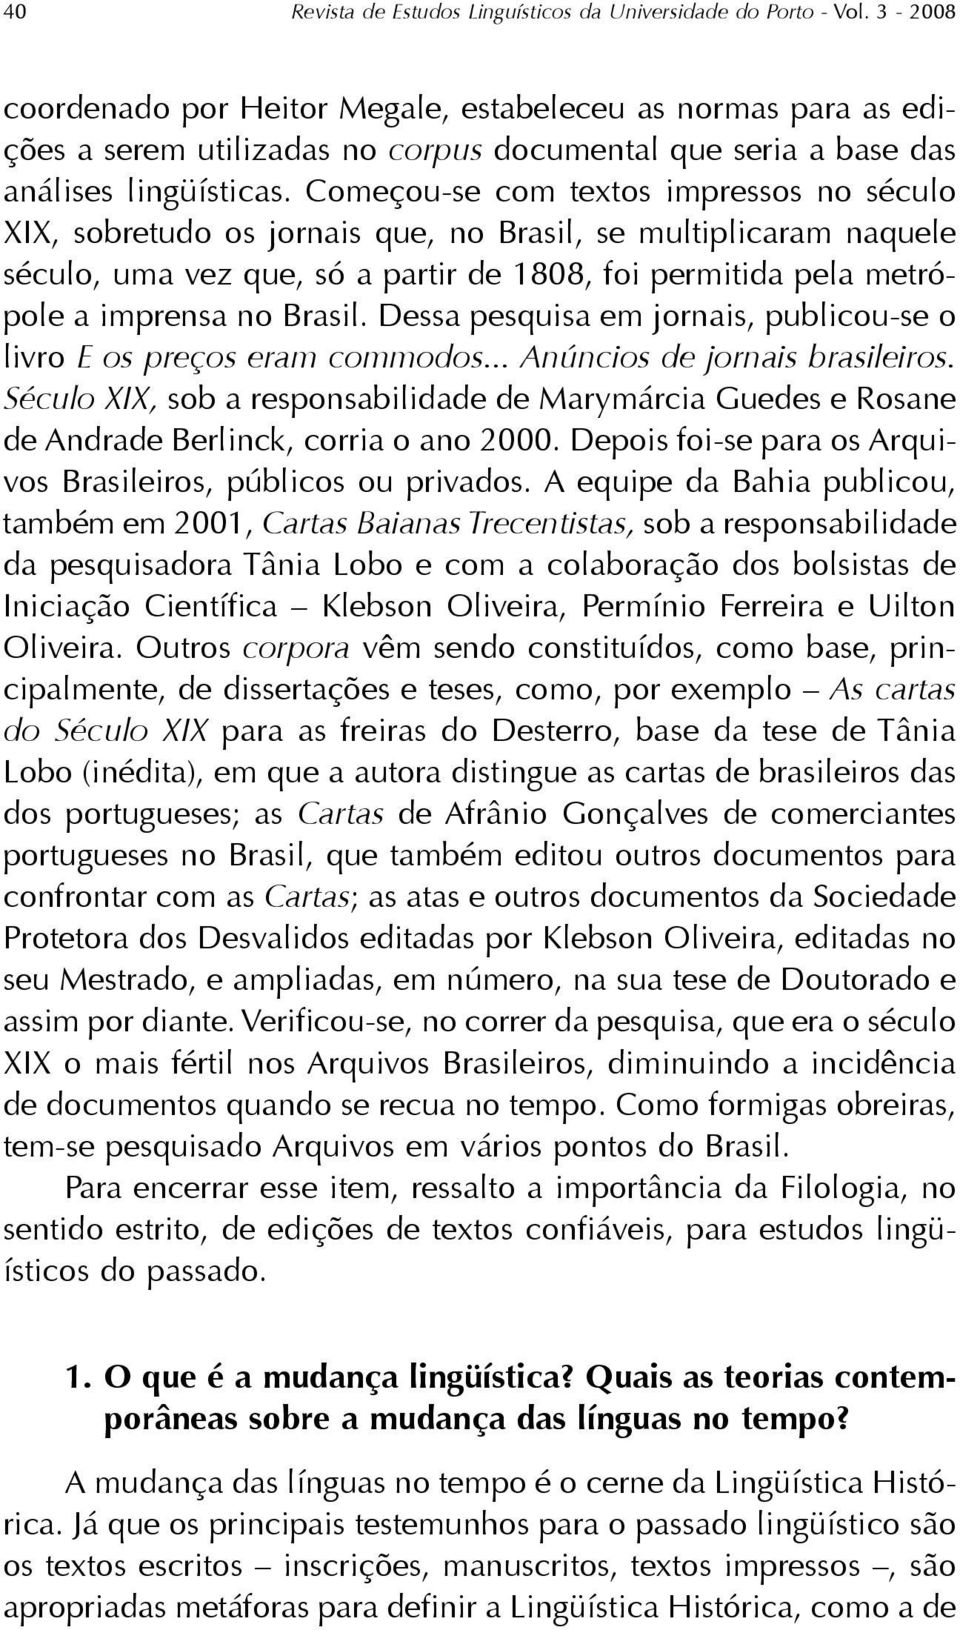 Começou-se com textos impressos no século XIX, sobretudo os jornais que, no Brasil, se multiplicaram naquele século, uma vez que, só a partir de 1808, foi permitida pela metrópole a imprensa no